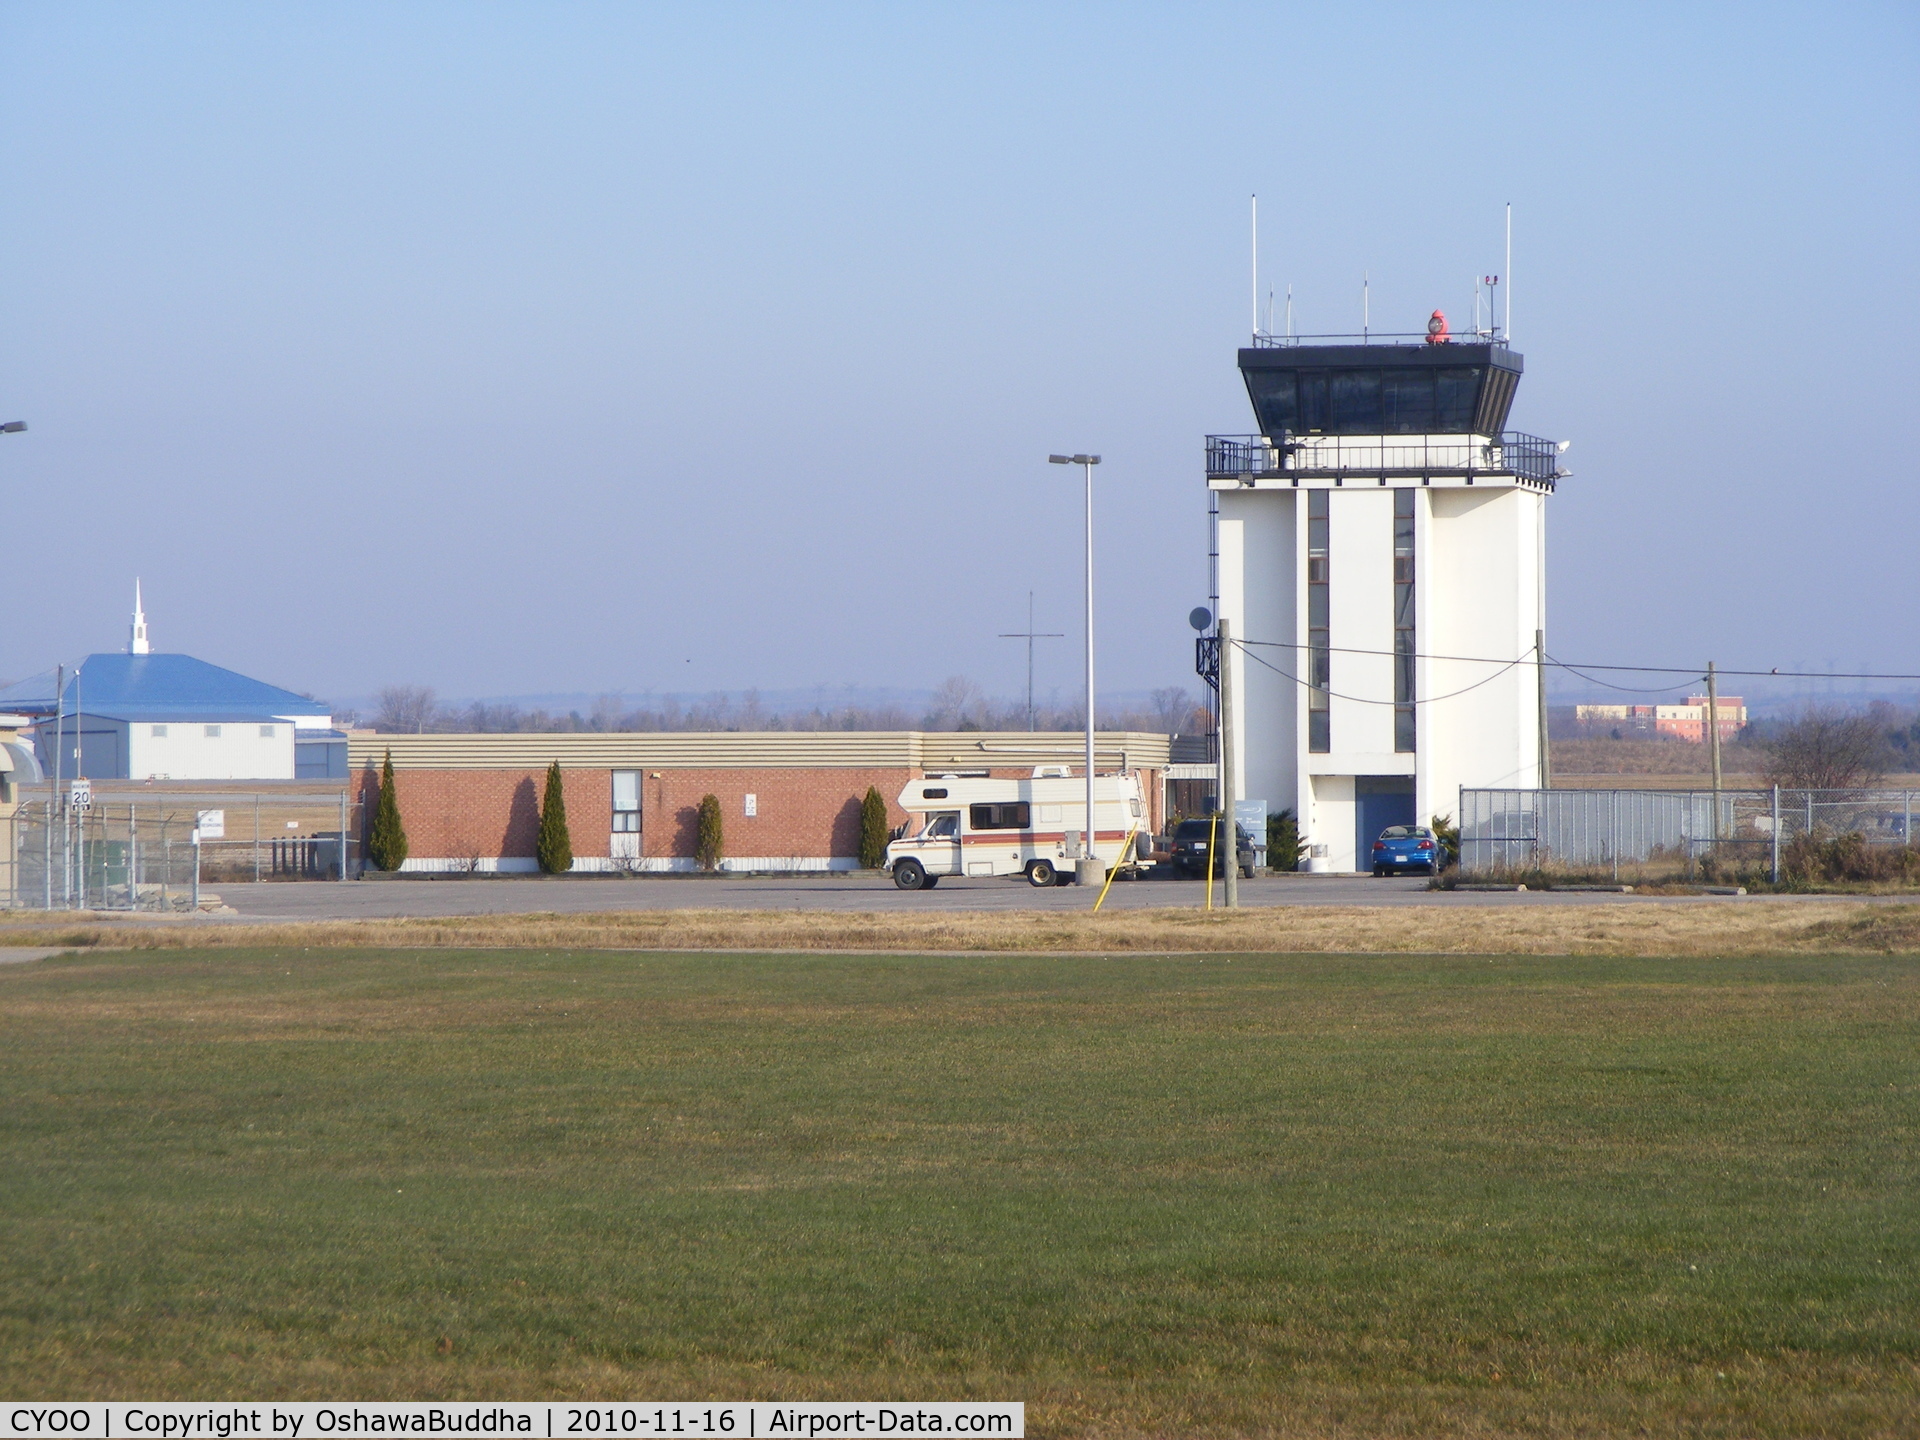 Oshawa Airport, Oshawa, Ontario Canada (CYOO) - The last ruminants of the south field